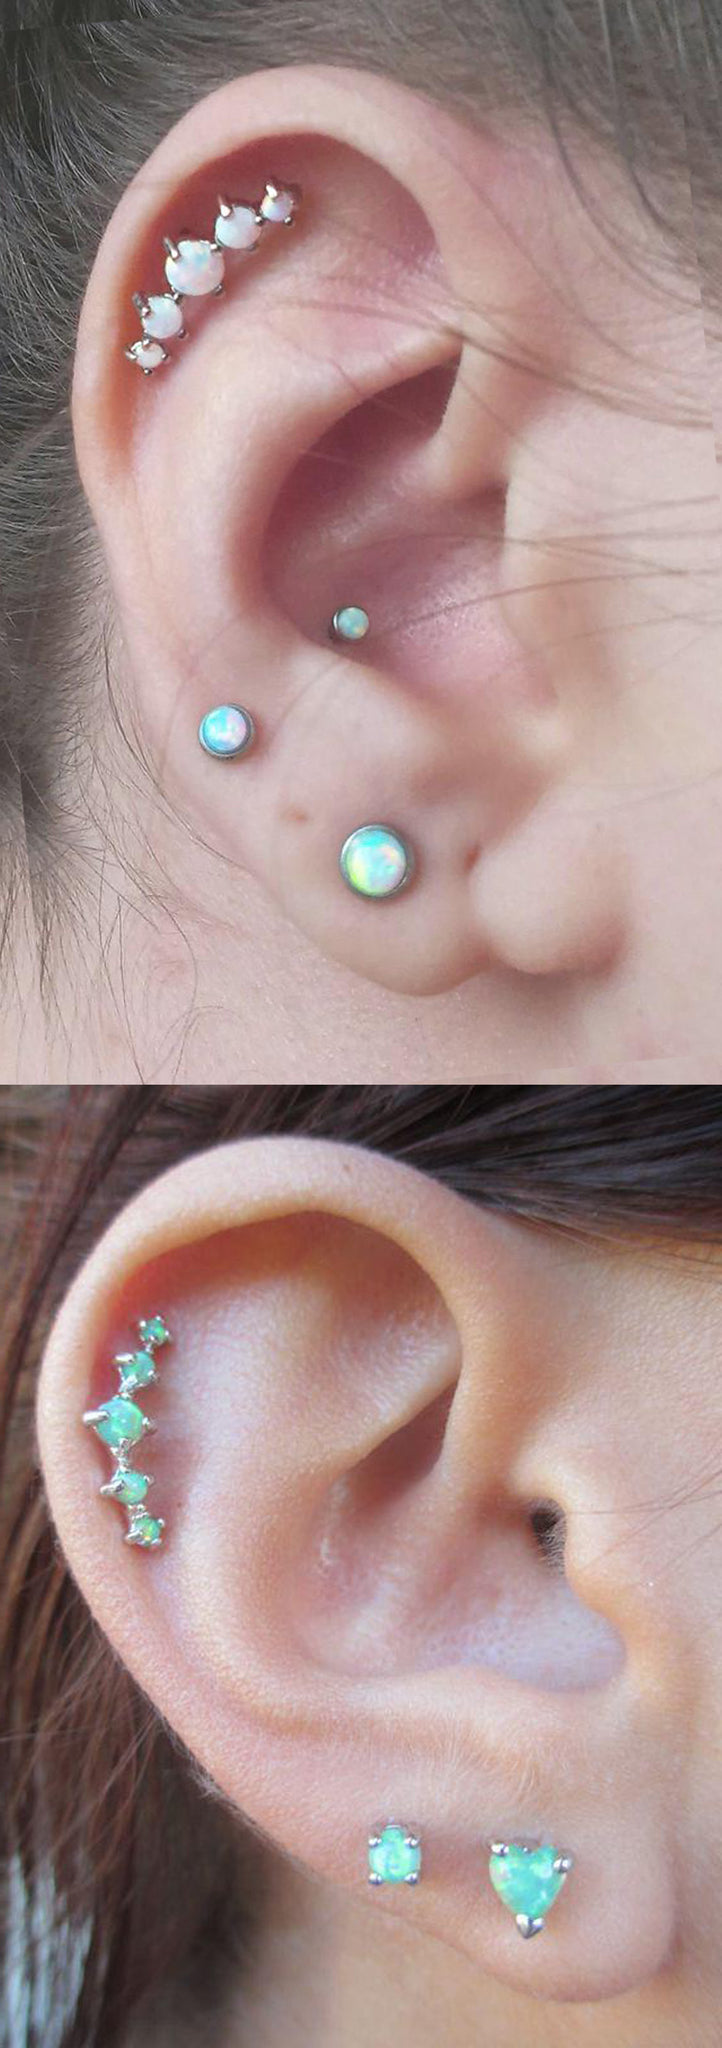 Simple Multiple Ear Piercing Ideas Combinations at MyBodiArt.com - 5 Opal Cartilage Helix Earring Jewelry - Double Opal Lob Earring Stud 